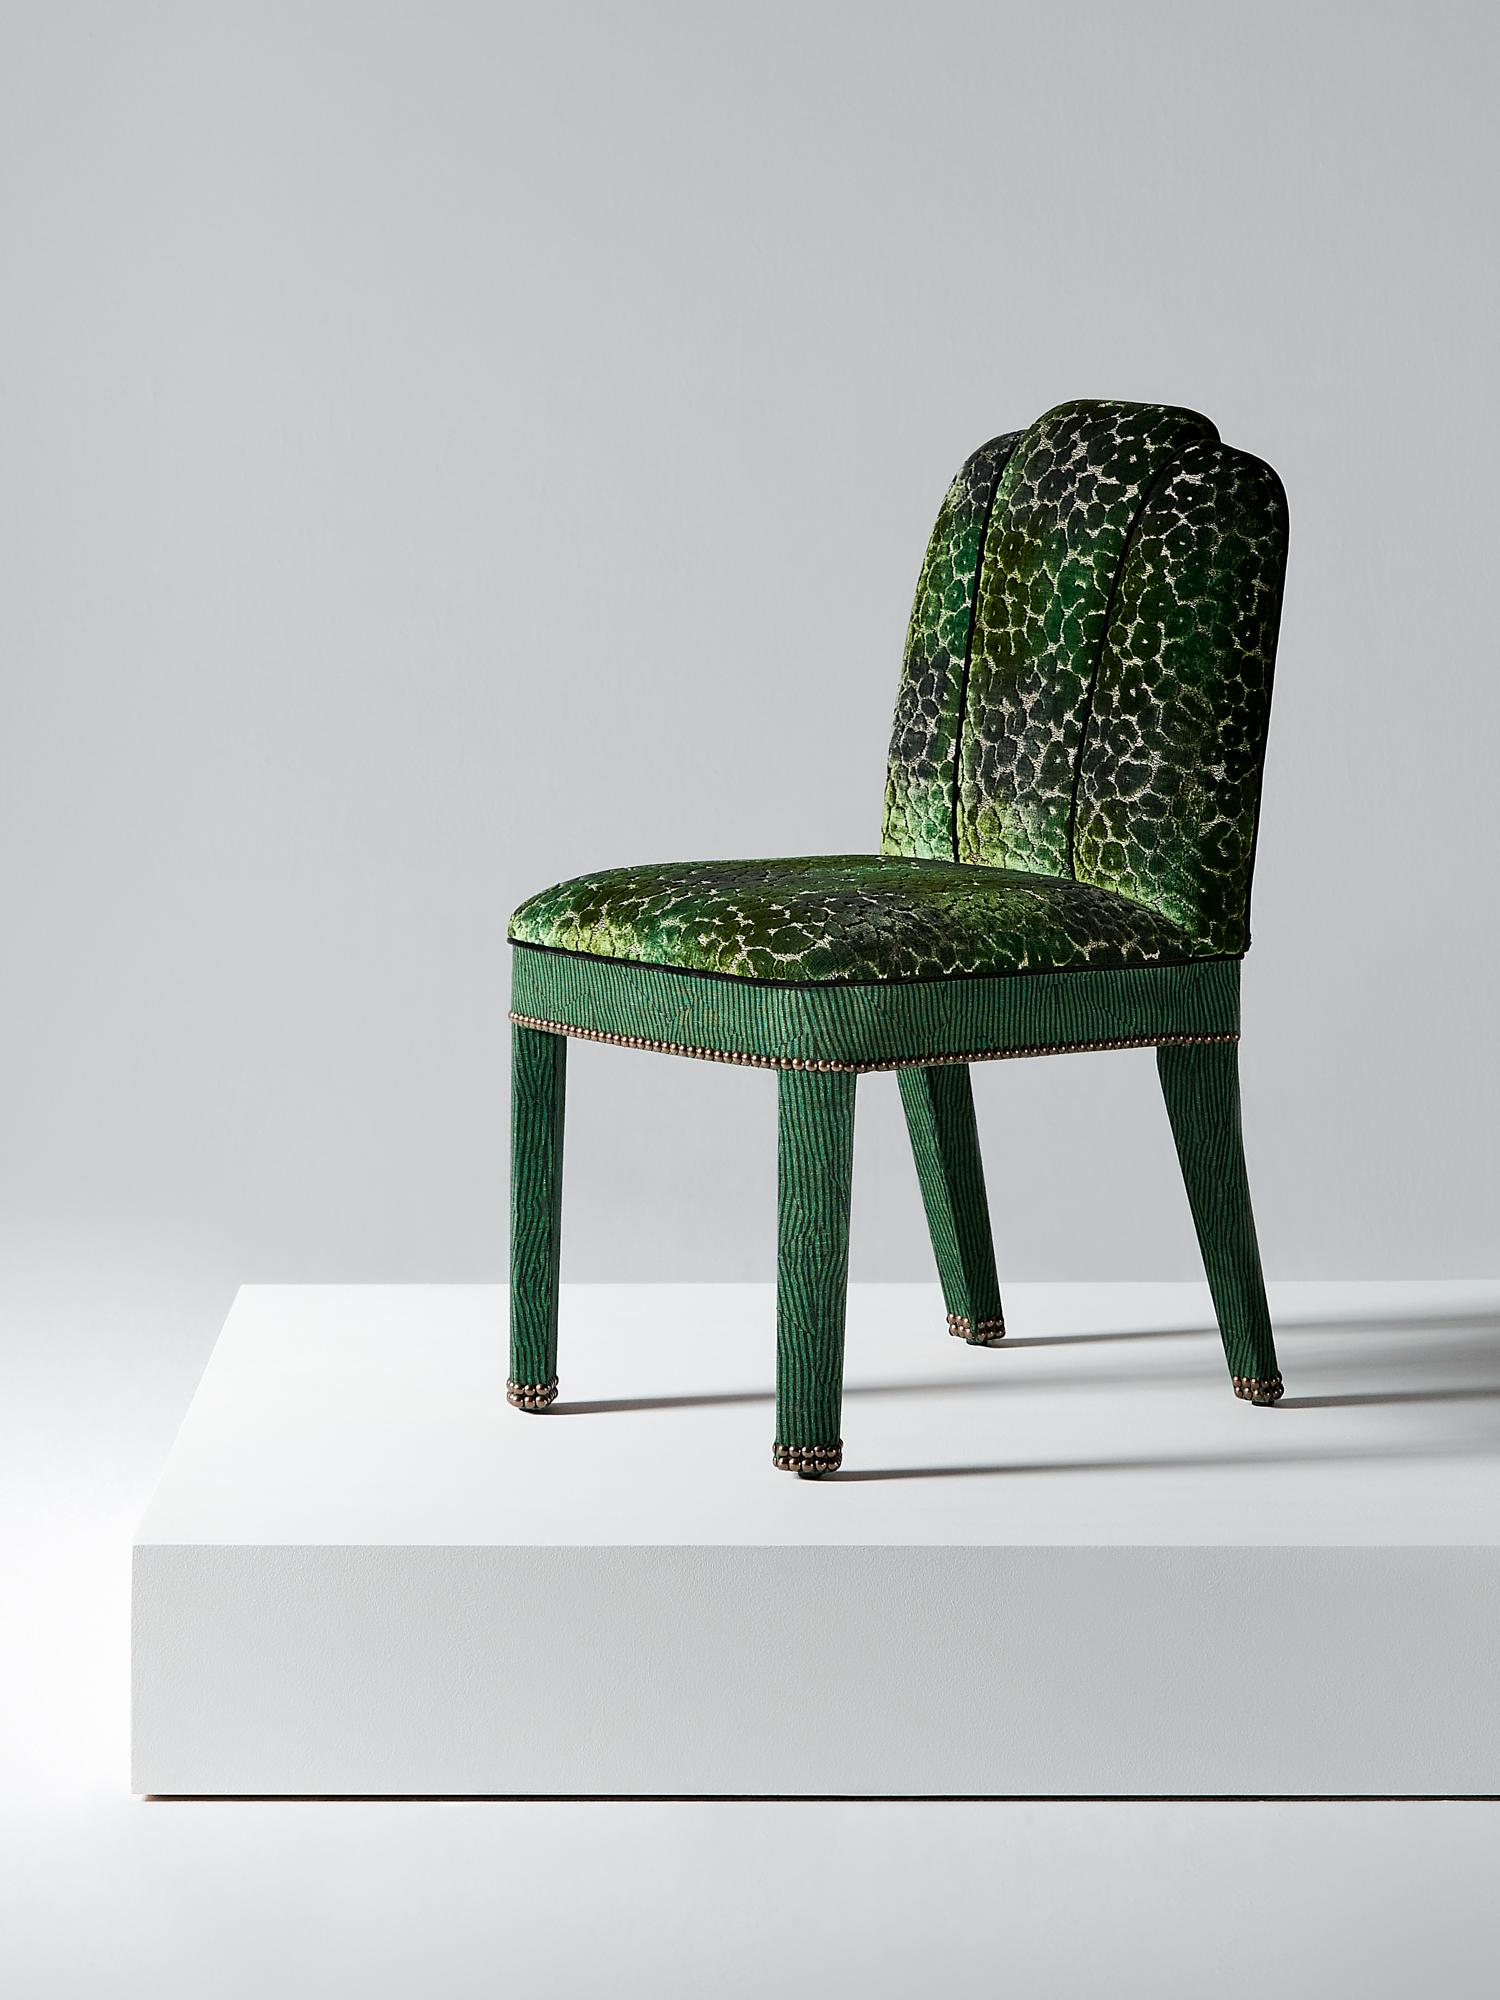 And Objects, ein von Martin Brudnizki und Nick Jeanes gegründetes Studio für Produktdesign mit Sitz in London.

Der Abbas-Esszimmerstuhl ist eine moderne Variante des klassischen gepolsterten Esszimmerstuhls. Er stützt den Rücken des Sitzenden